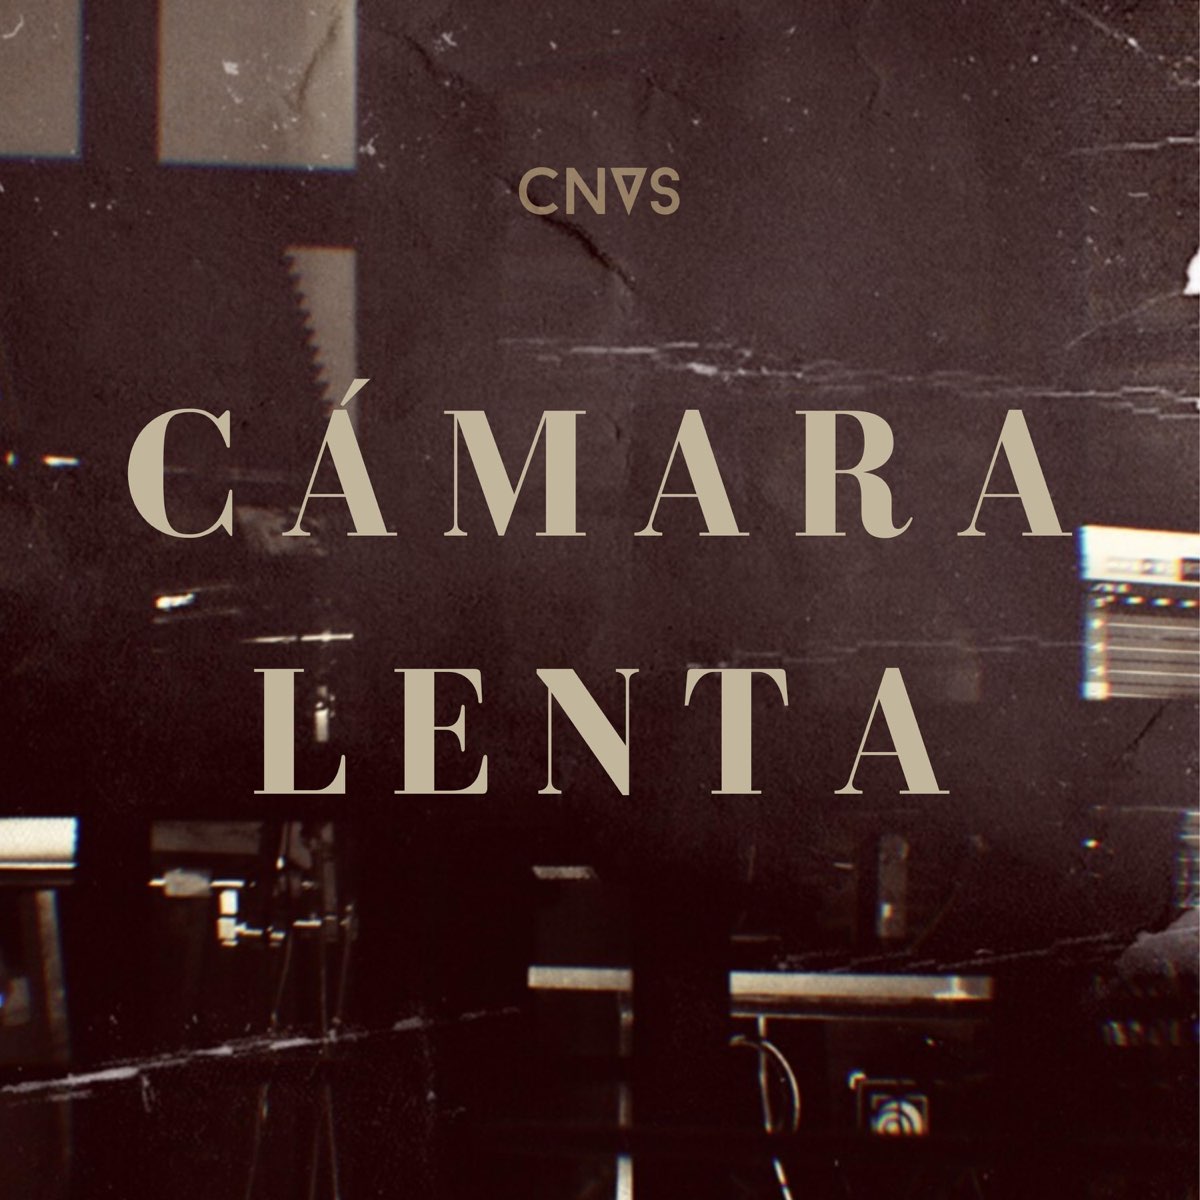 Cámara Lenta - Single by Cnvs on Apple Music